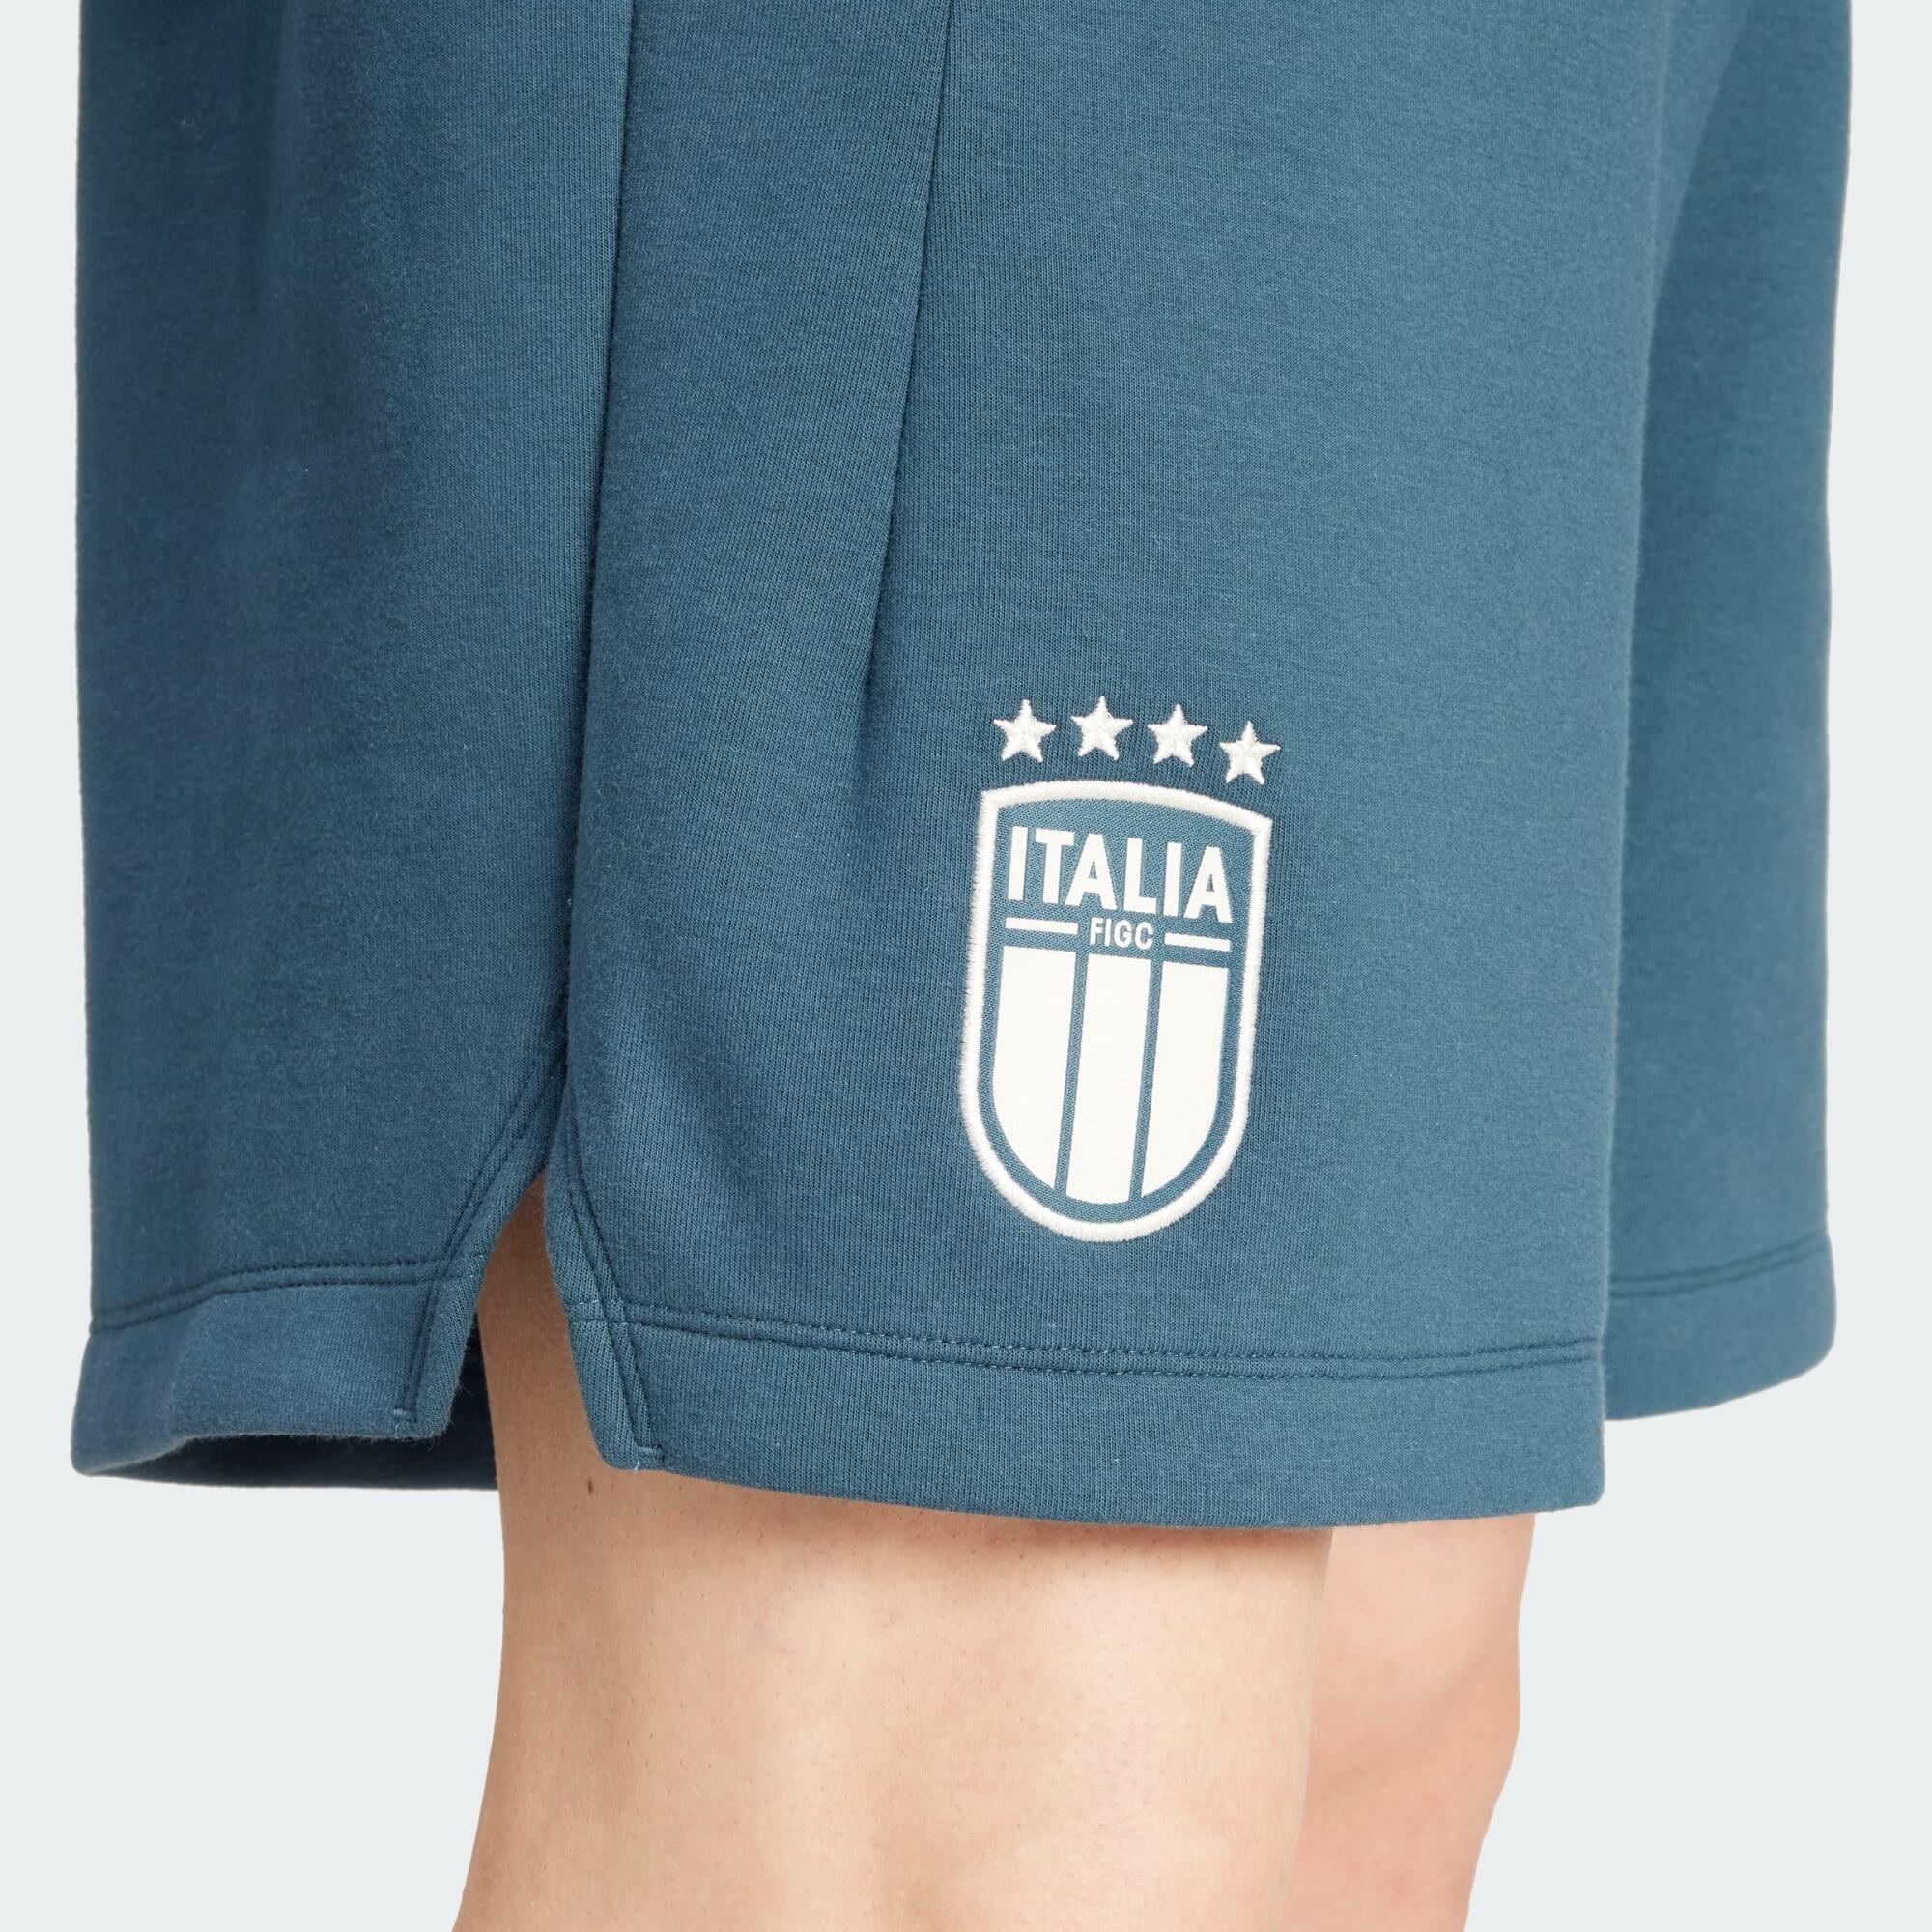 Italy Travel Shorts 4/5